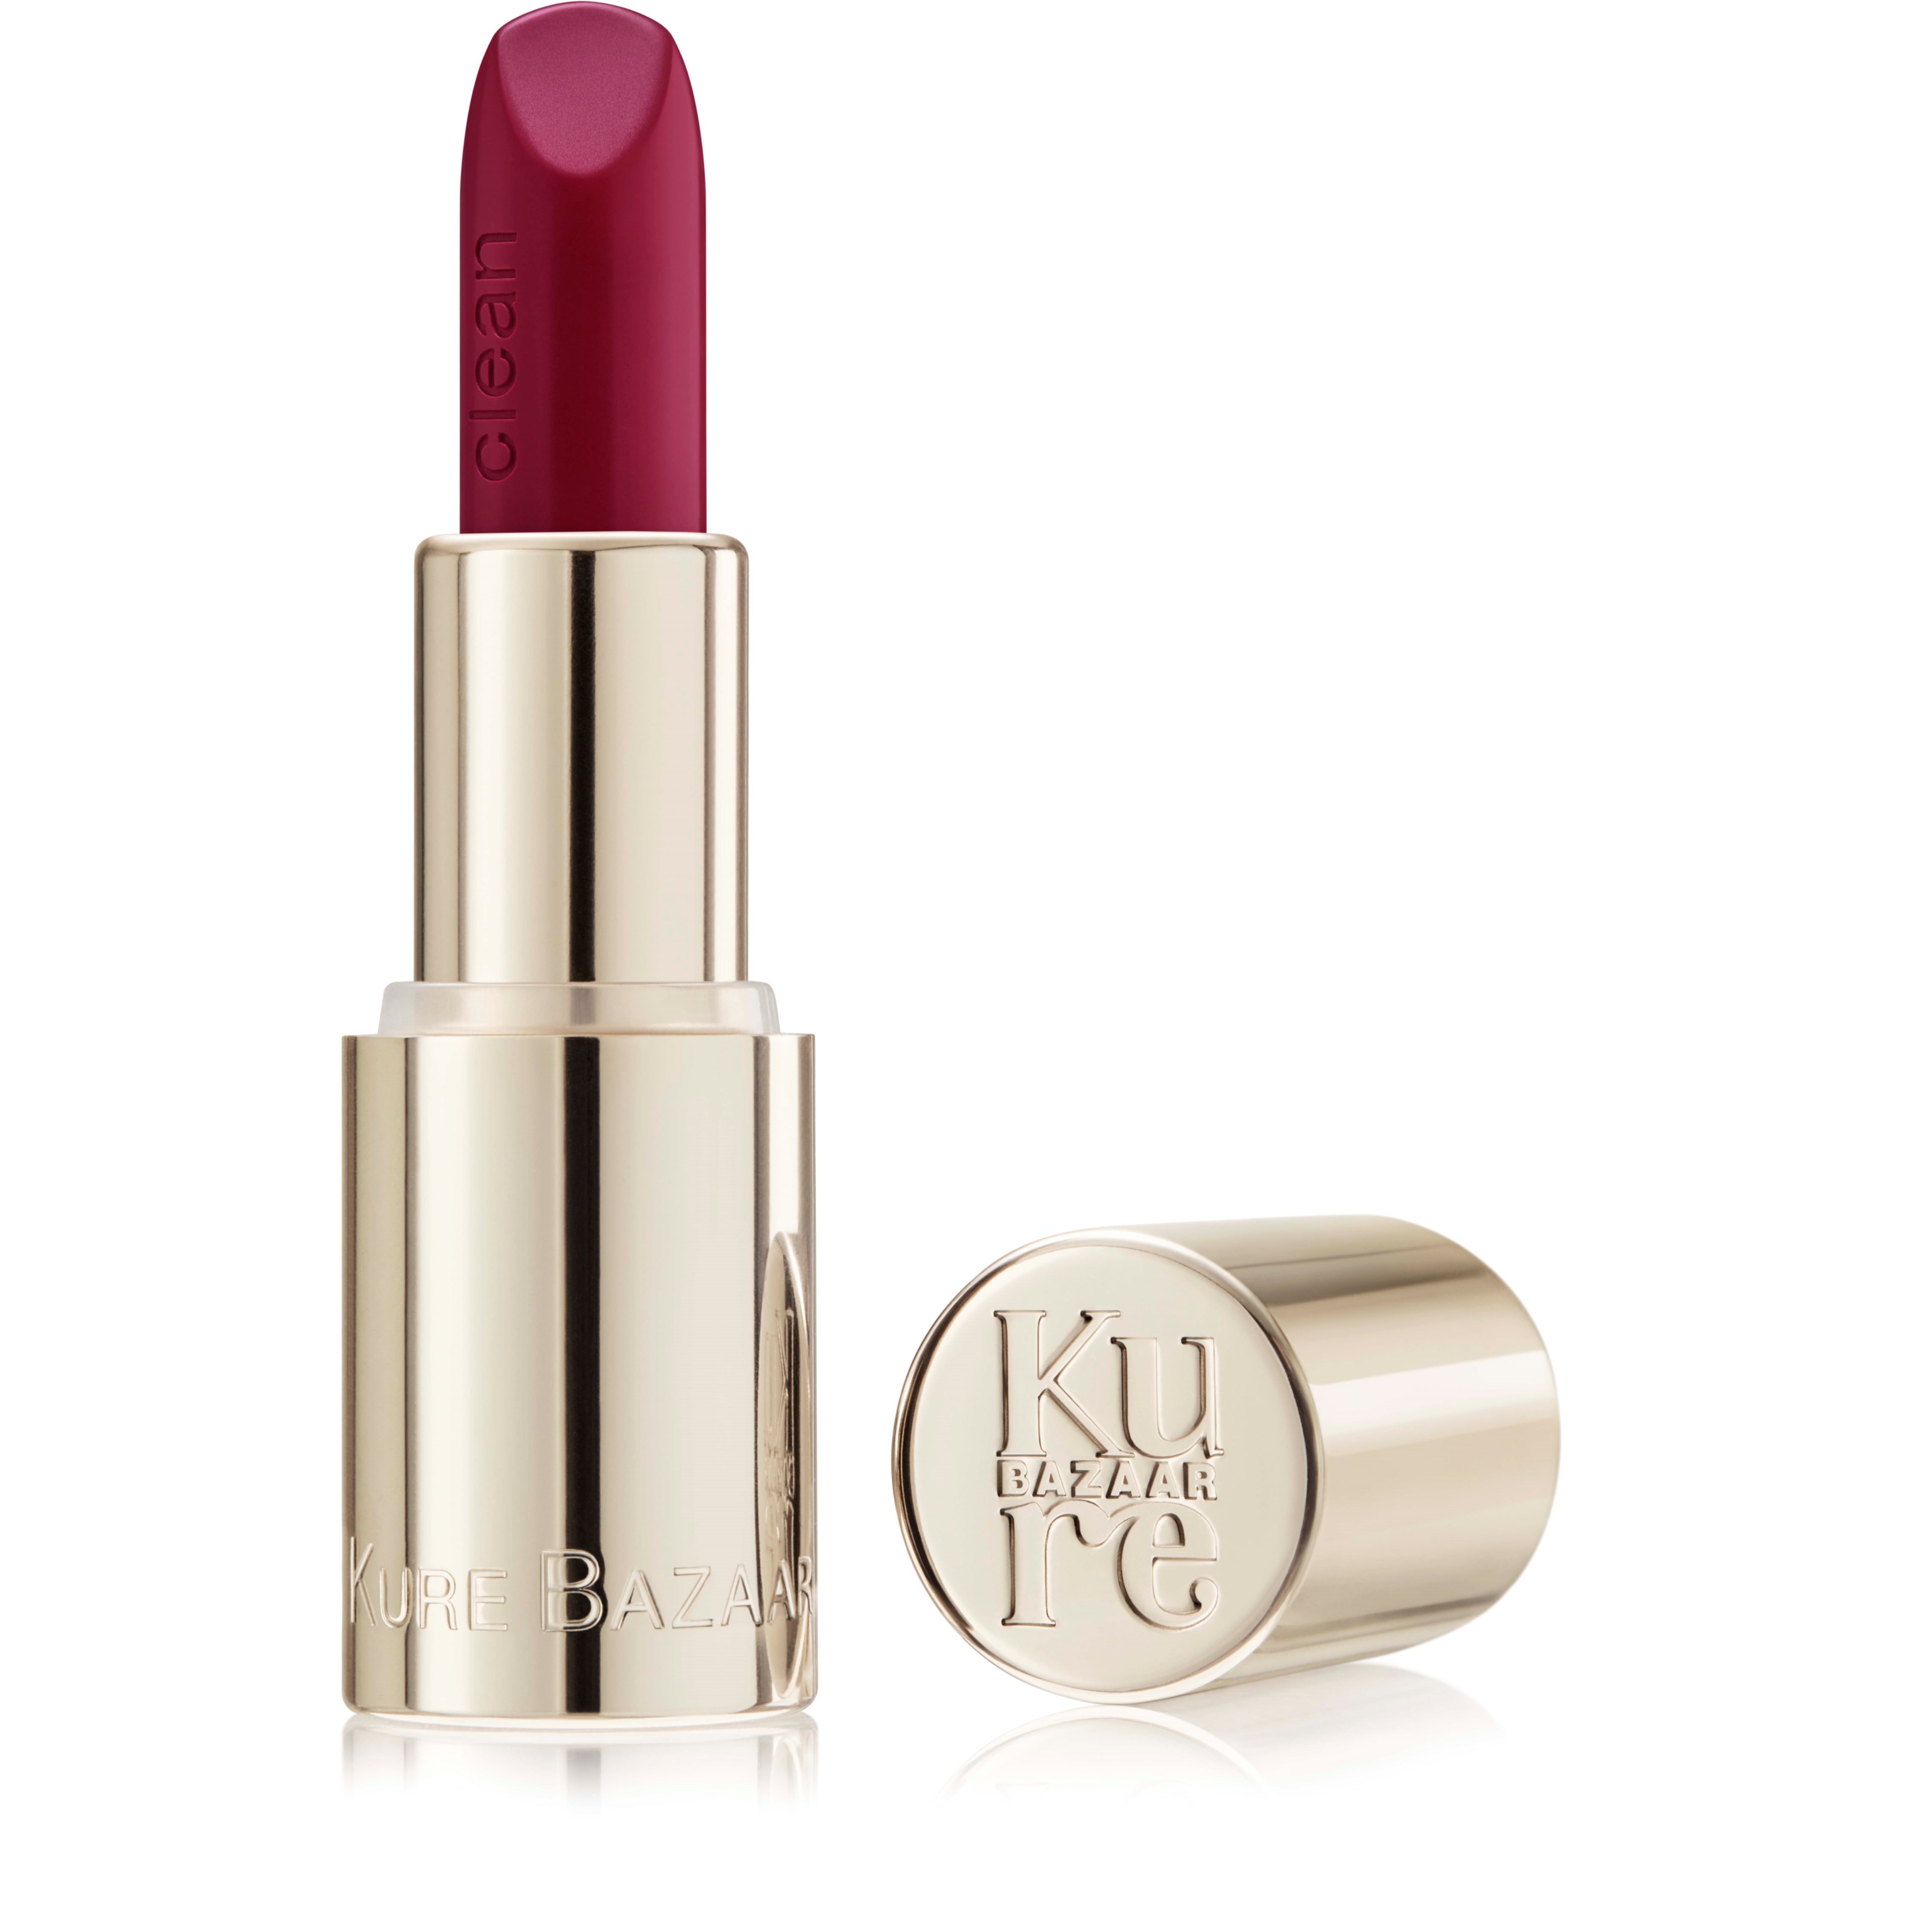 Läs mer om Kure Bazaar Matte lipstick September